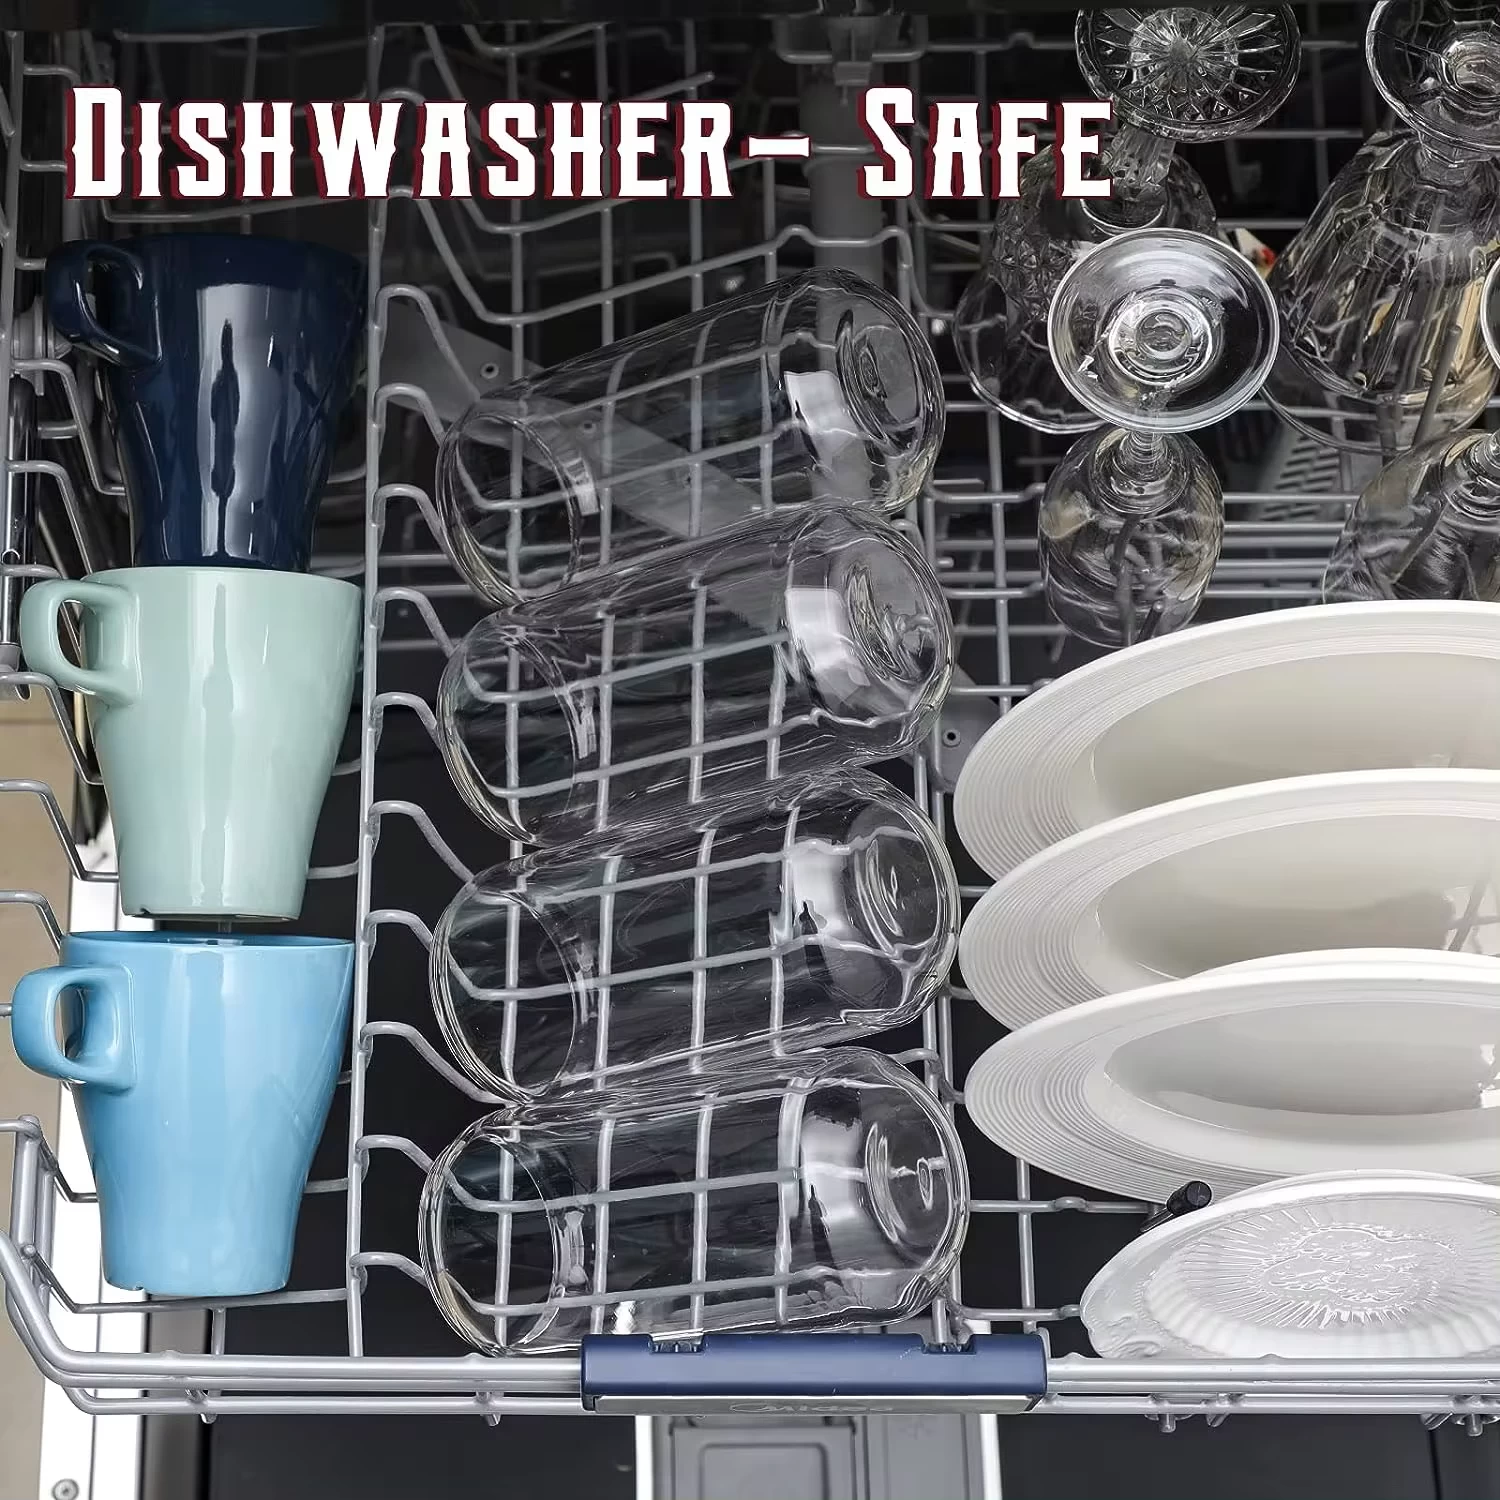 dishwasher-safe banner for wine glass